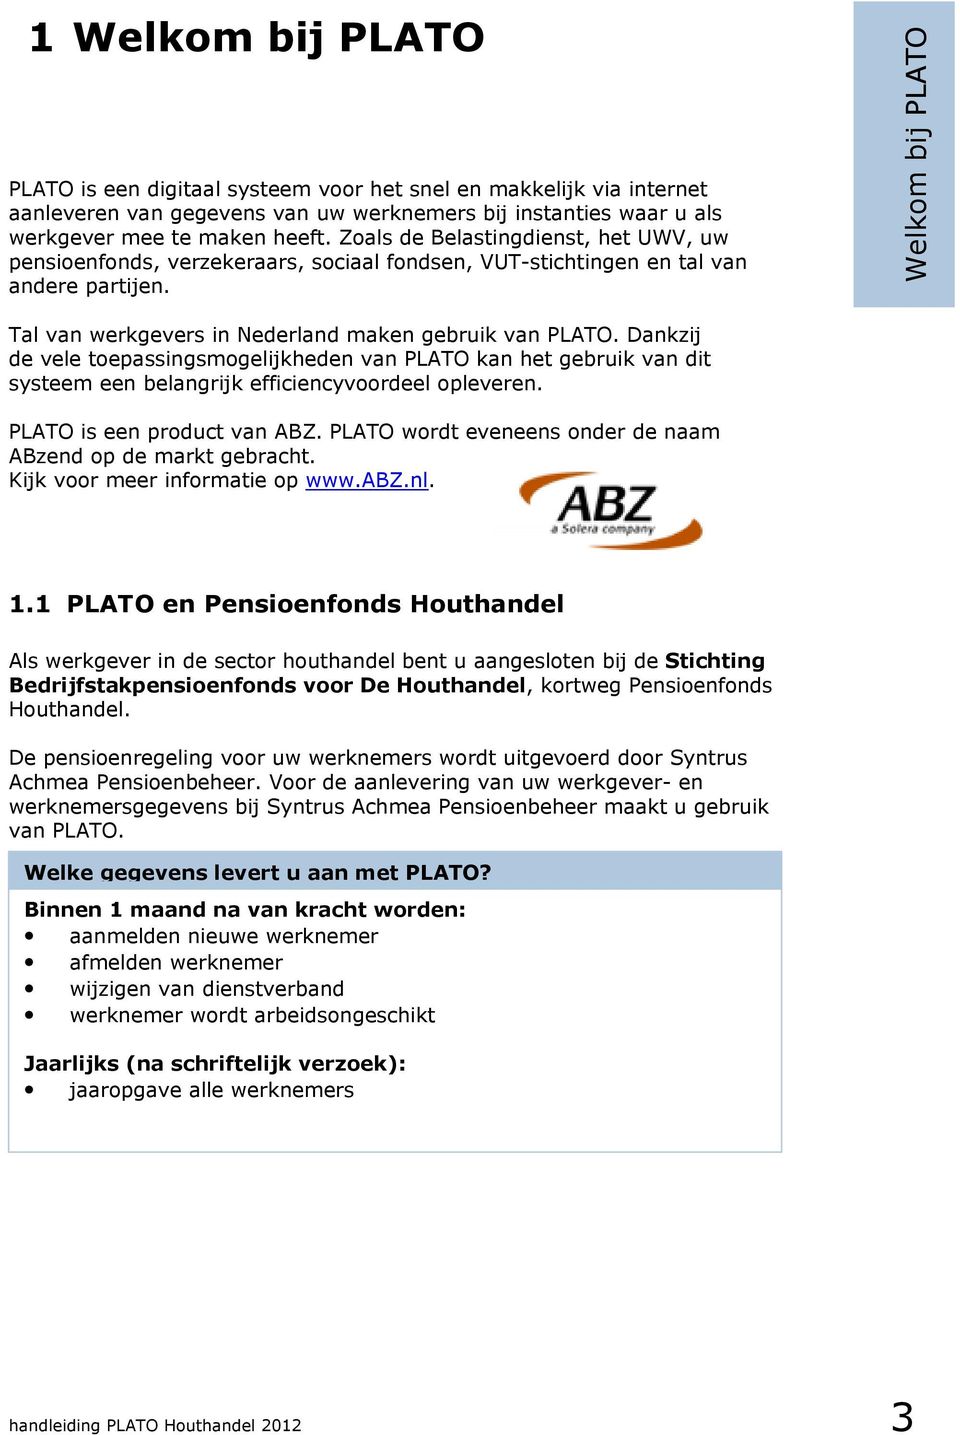 Welkom bij PLATO 1 Welkom bij PLATO Tal van werkgevers in Nederland maken gebruik van PLATO.